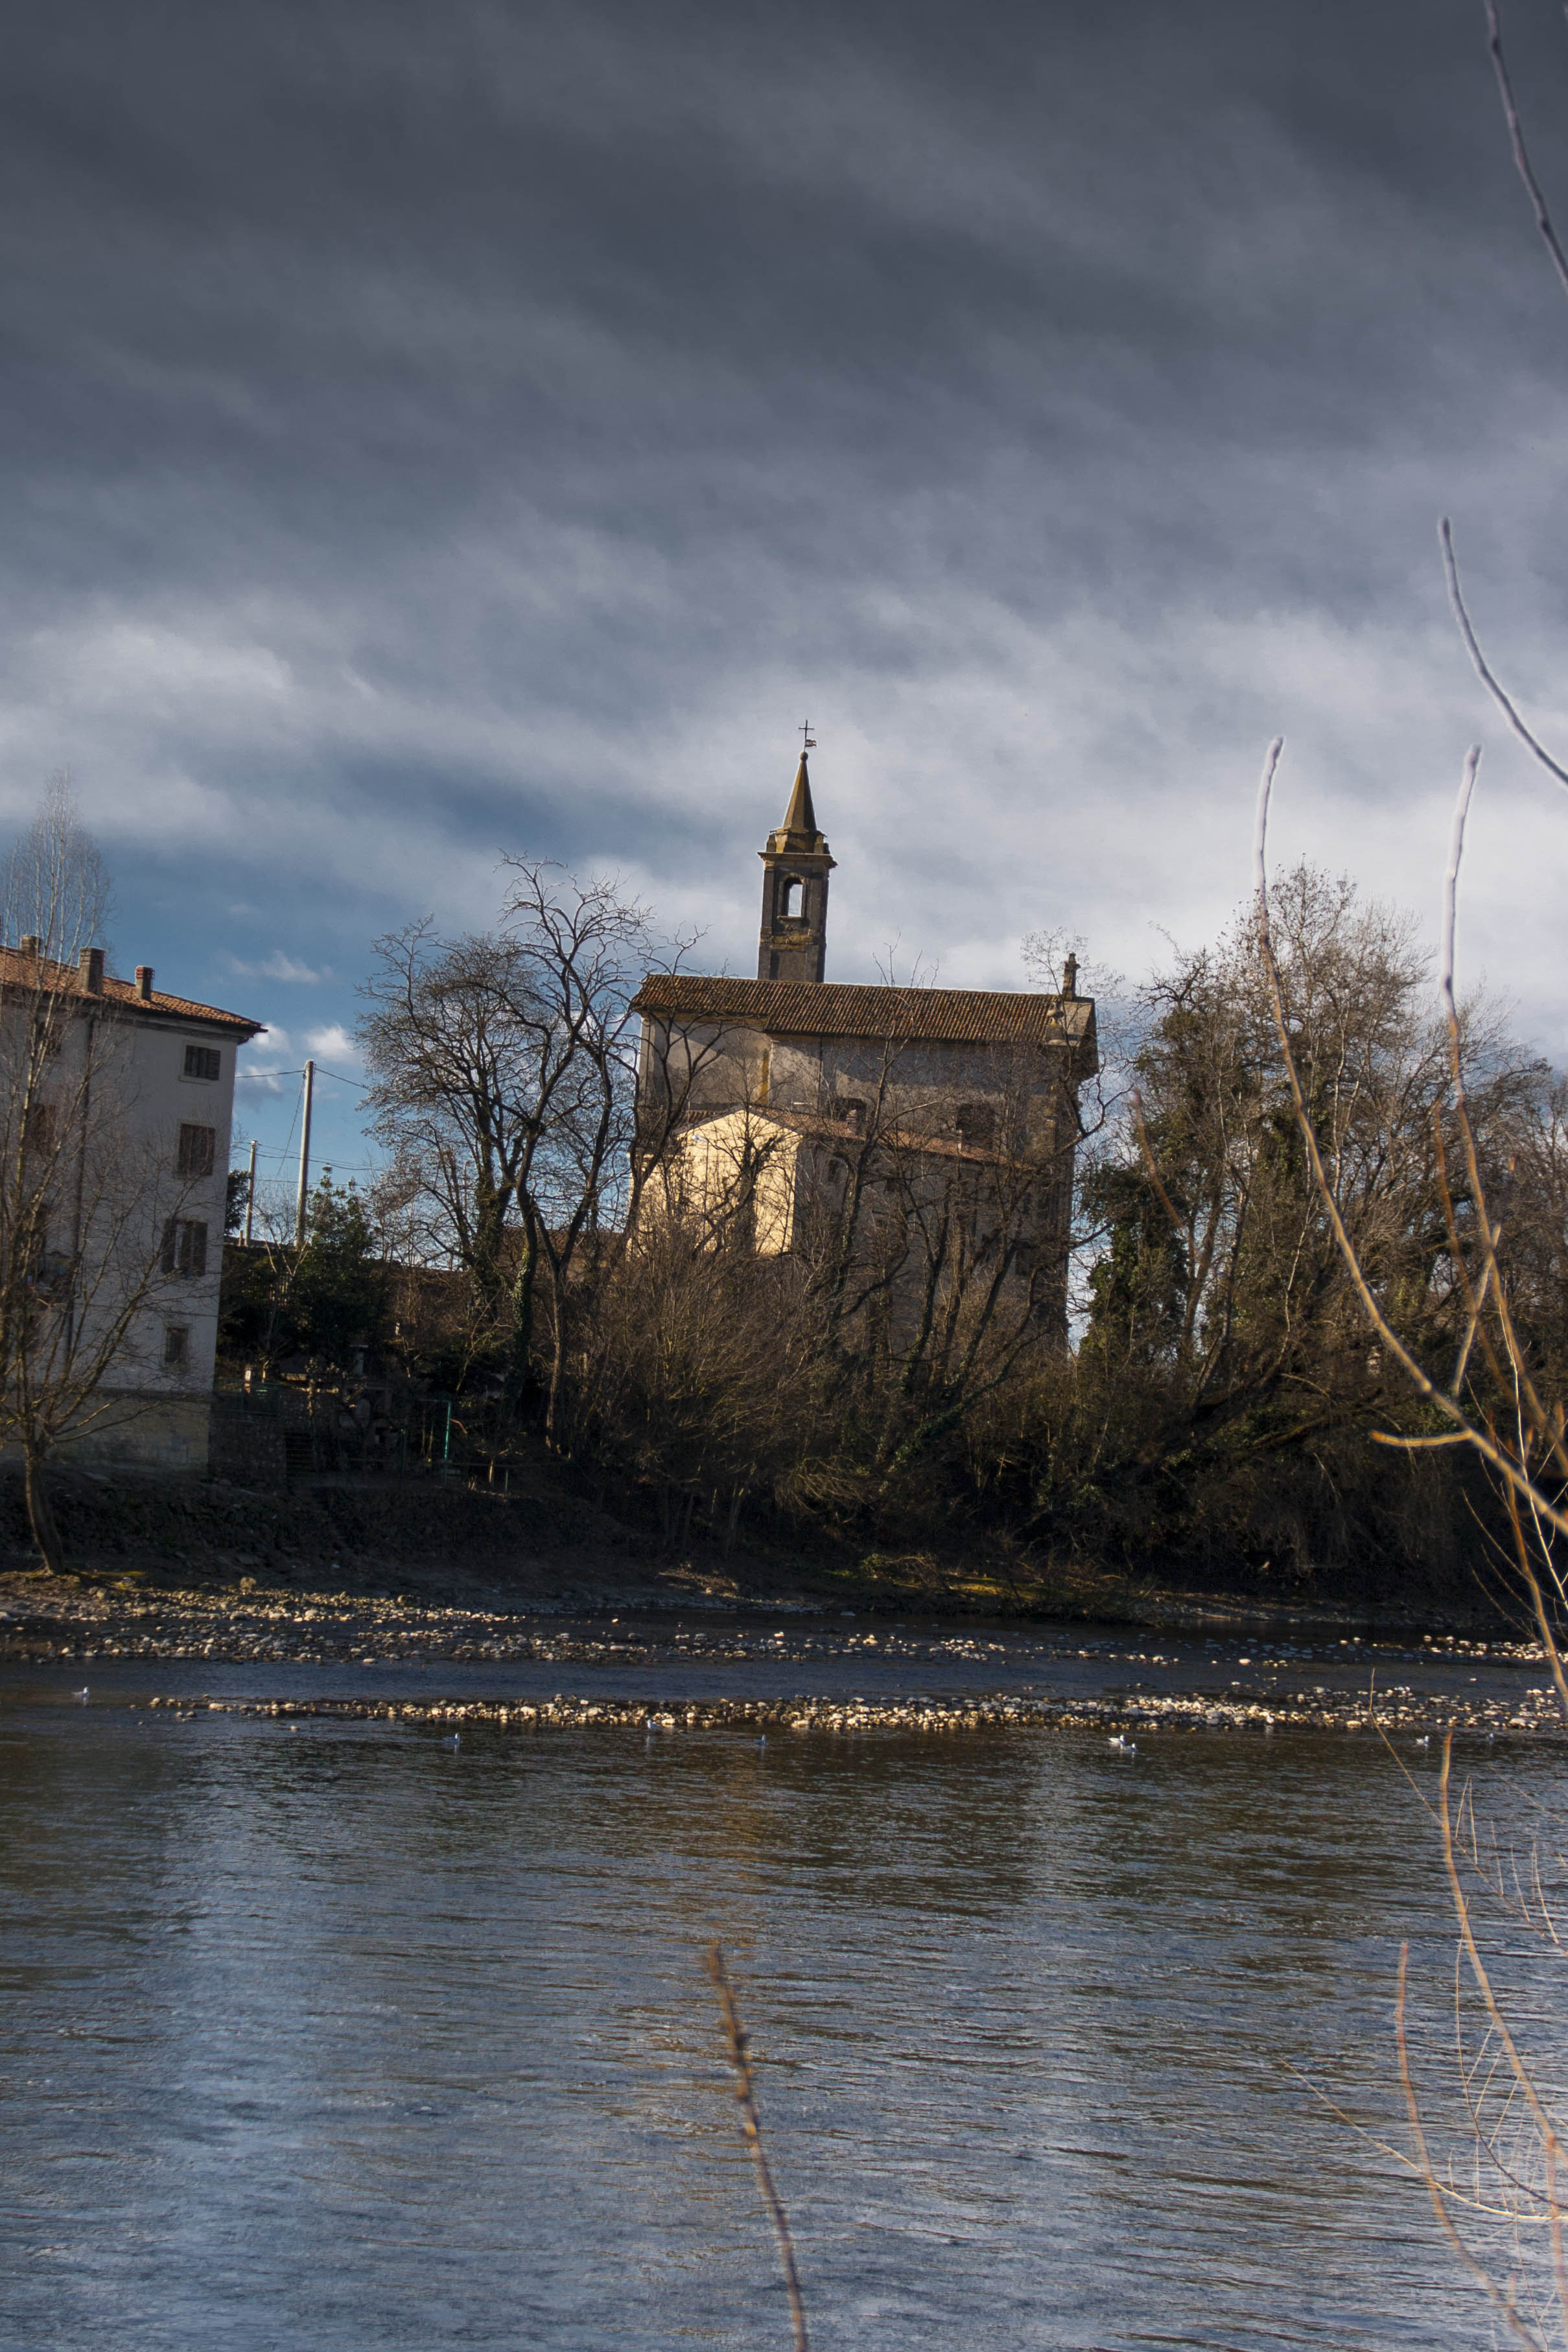 Settimo (Vr) Adige Fiume Percorso lungo Adige da Parona a Pescantina